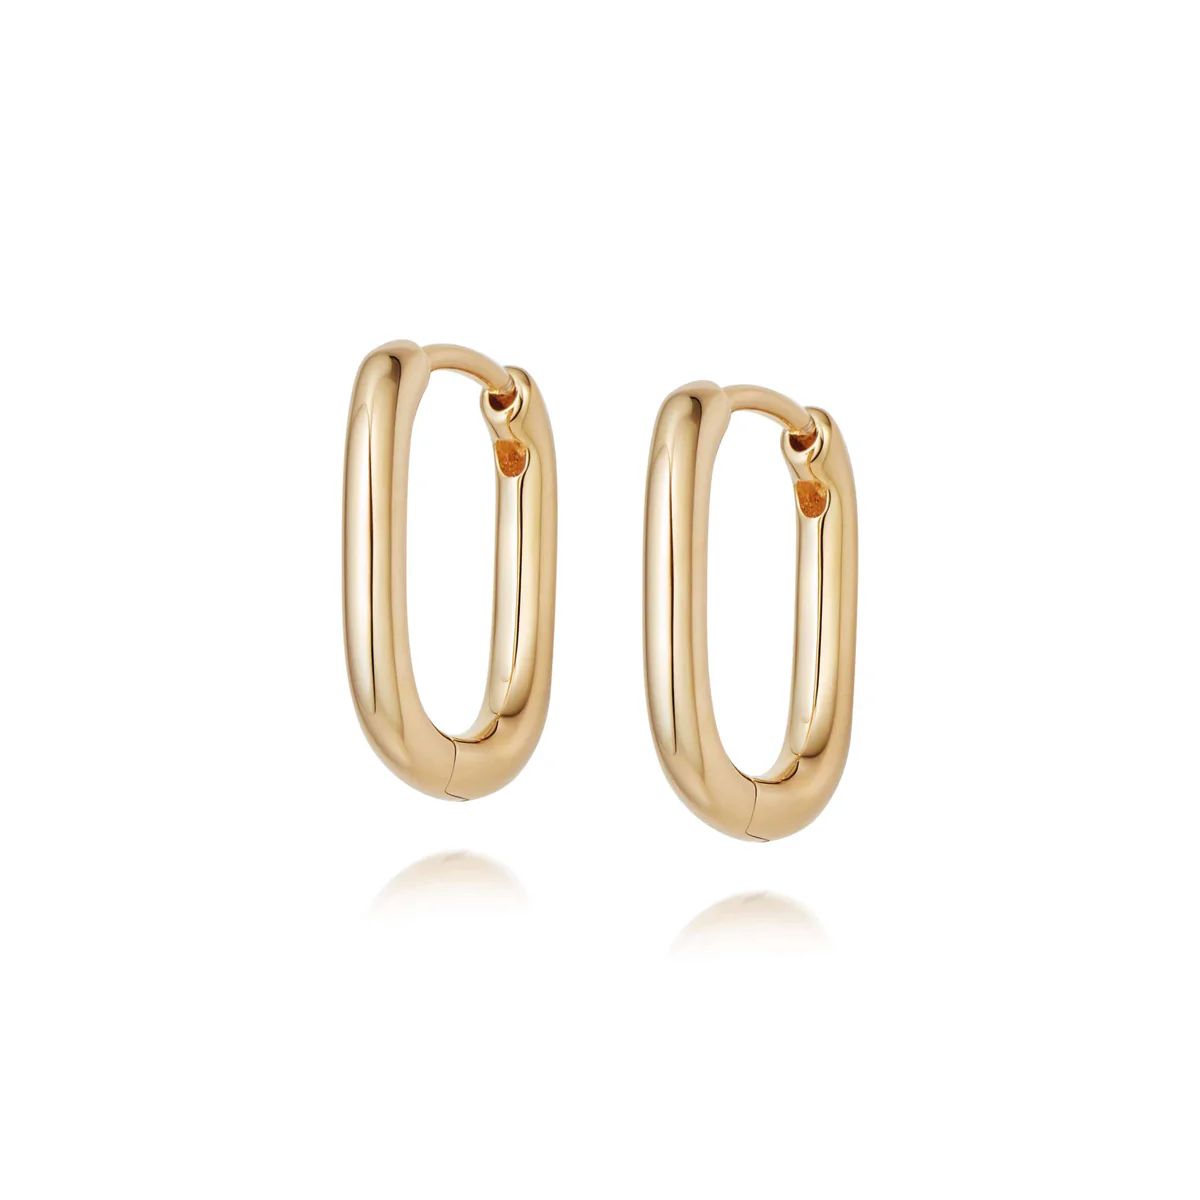 Estée Lalonde Mini Square Hoop Earrings 18ct Gold Plate | Daisy London Jewellery